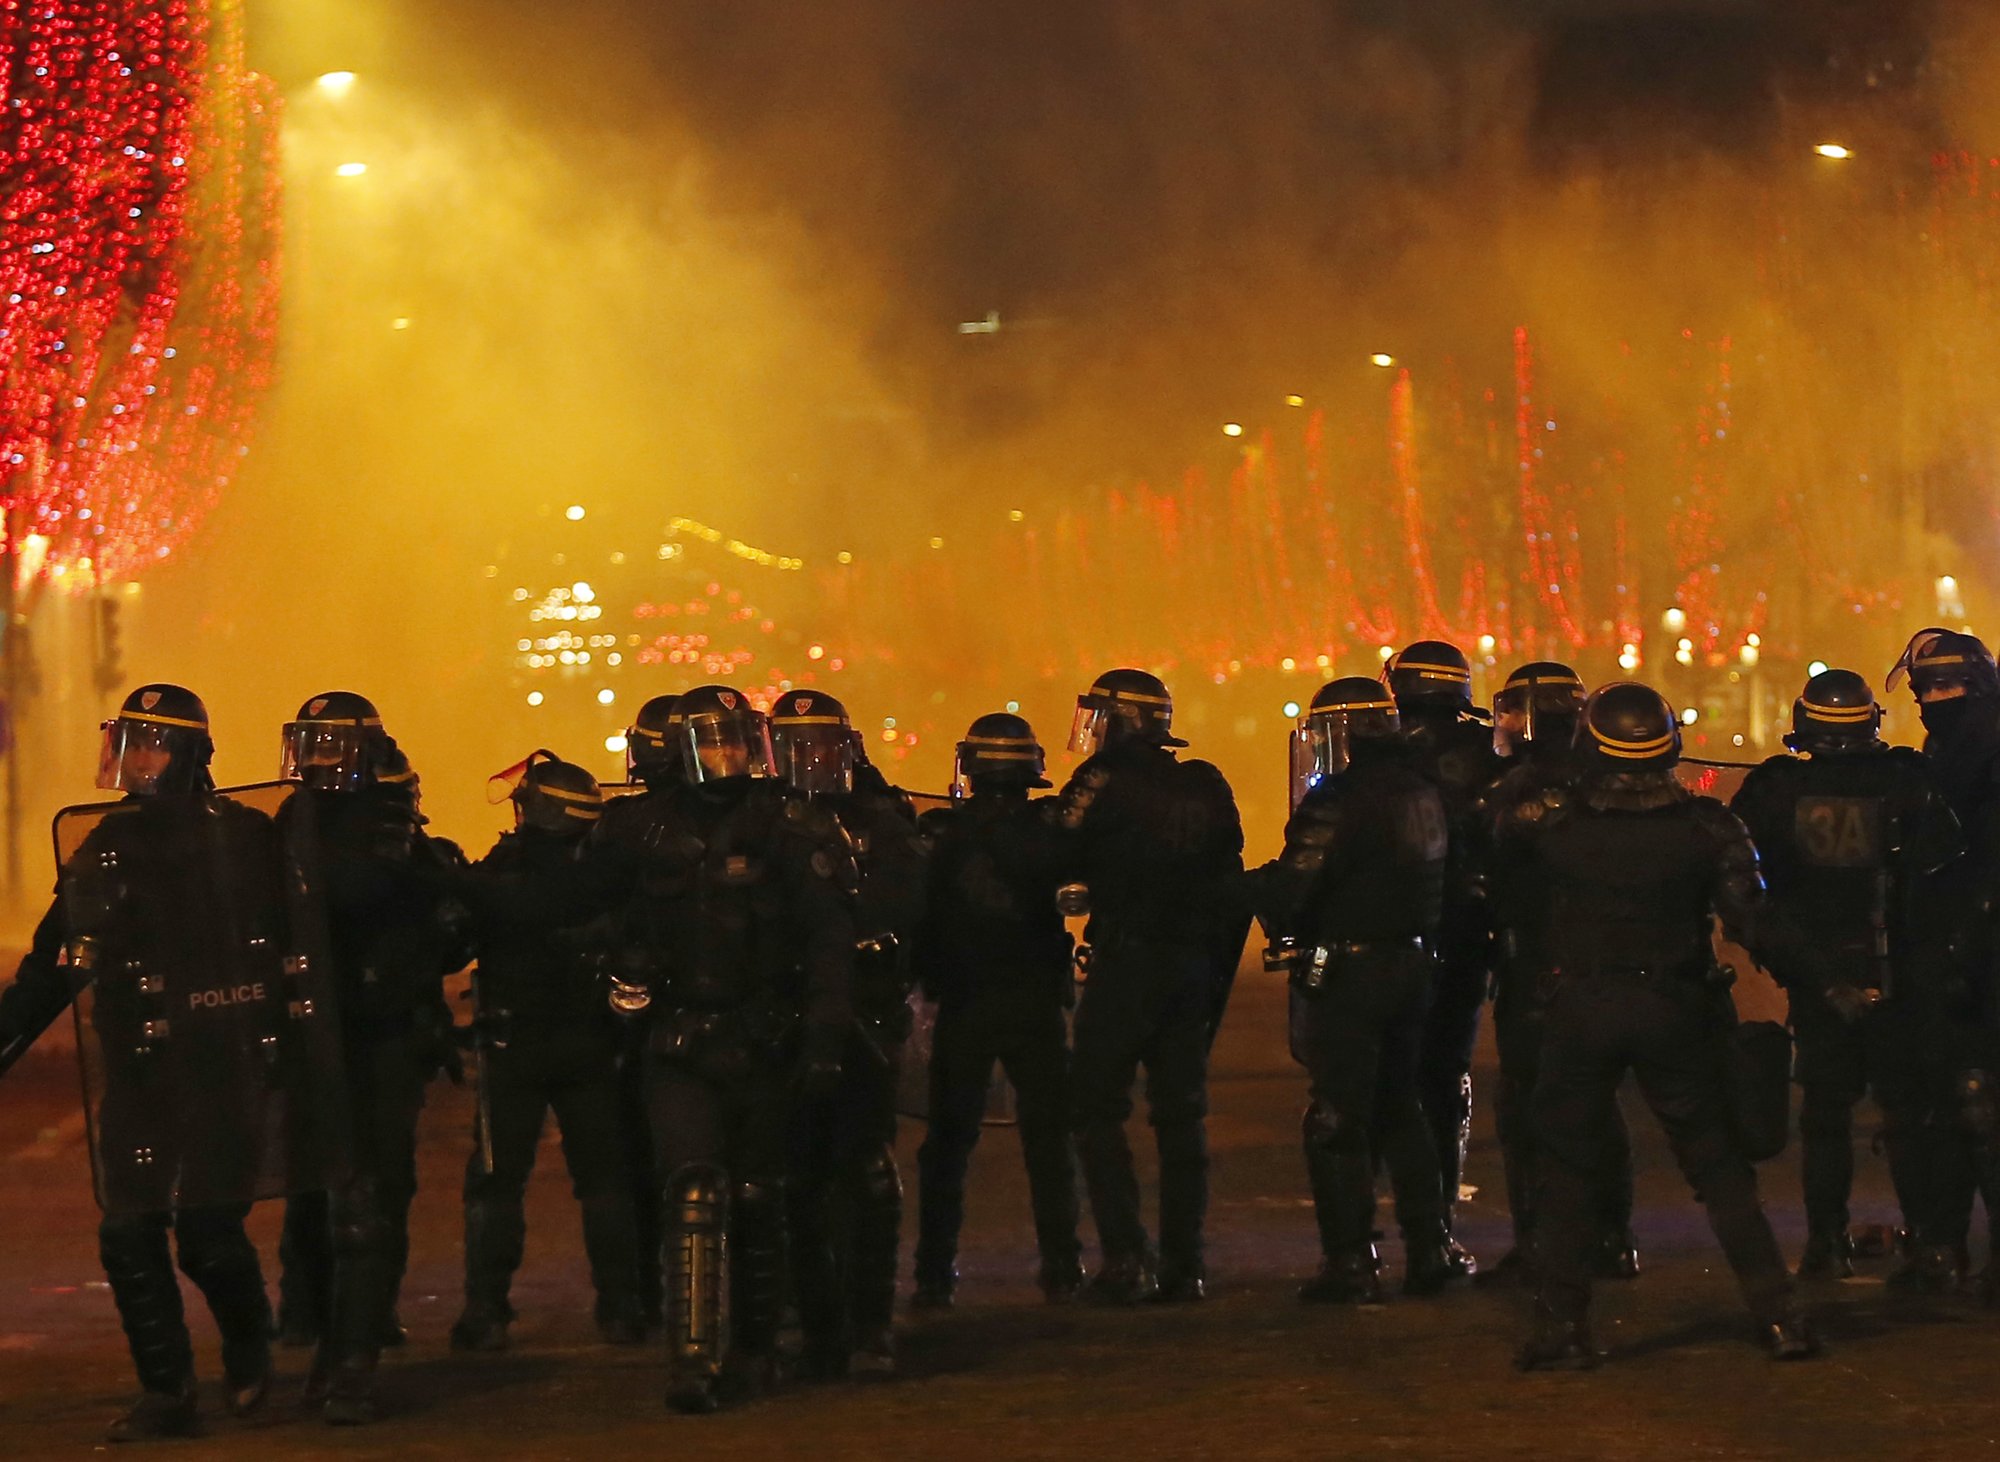 Субботние антиправительственные протесты во французской столице, которые сначала были мирными, переросли в беспорядки - полиции пришлось применять спецсредства и эвакуировать представителя правительства Бенжамен гриву. 